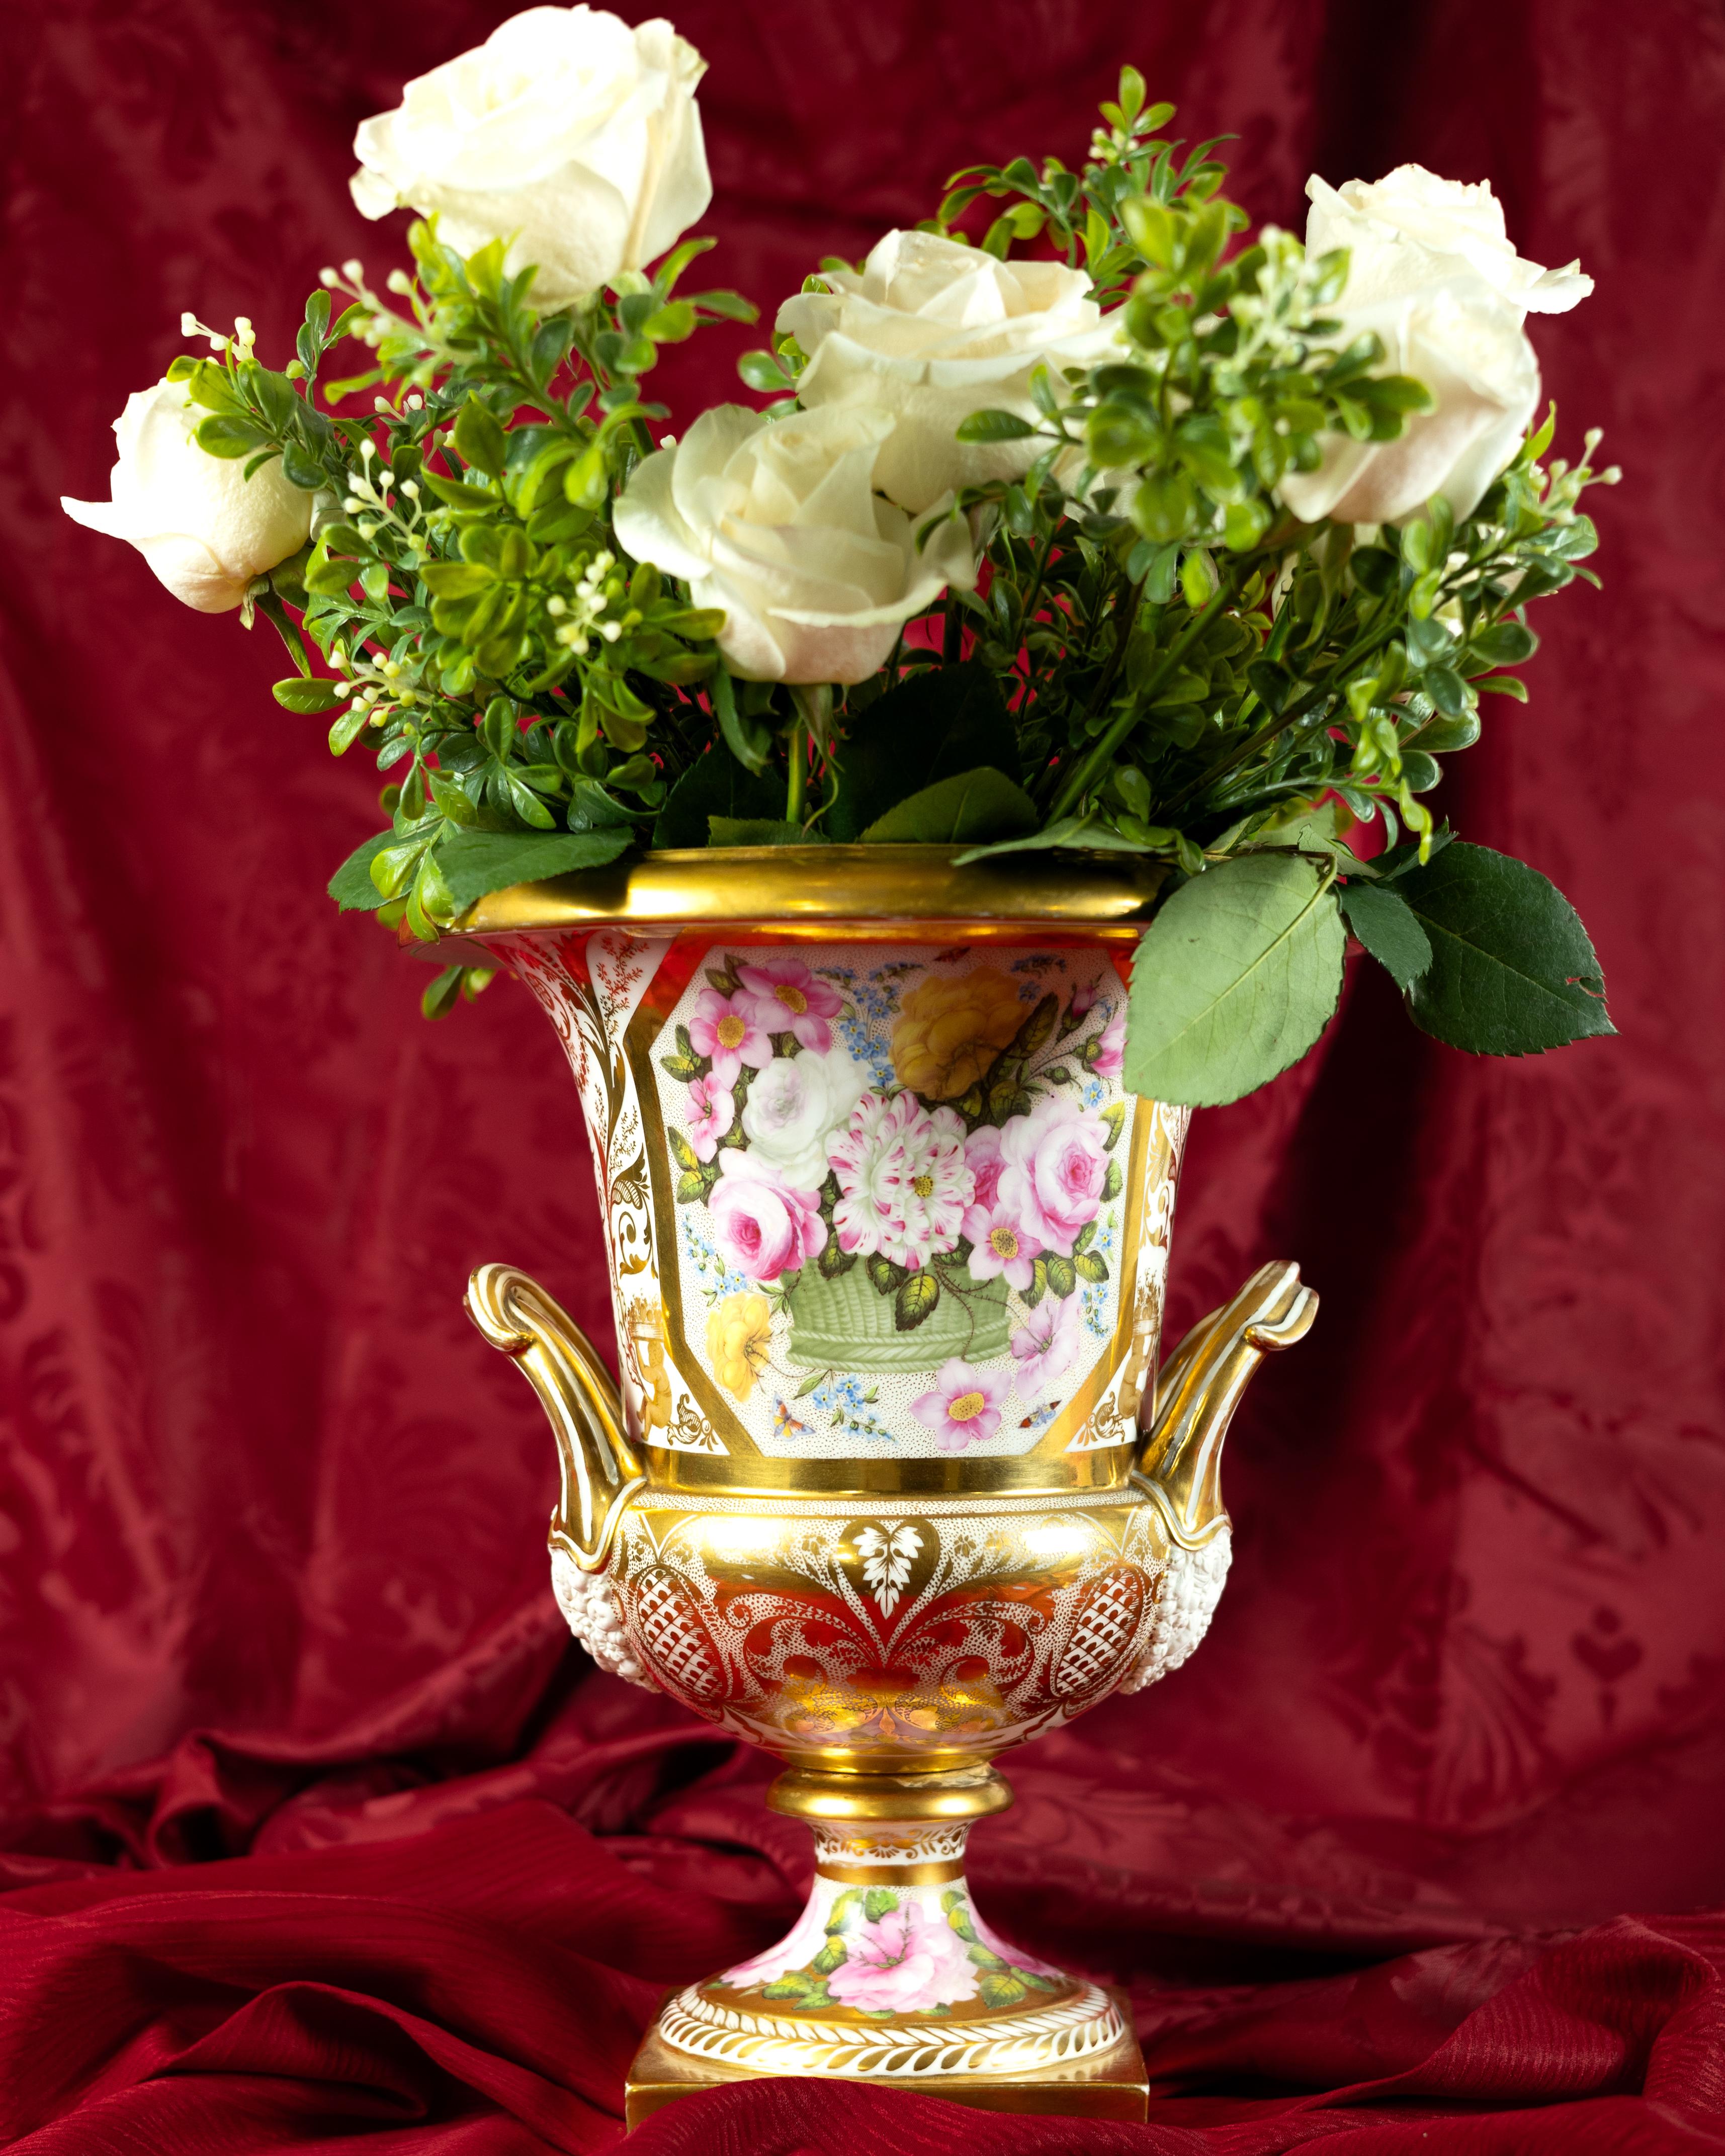  Diese bedeutsame Urne in Form einer Campanula aus der Regency-Zeit ist fein bemalt mit herrlichen rosa und gelben Rosen und kleinen blauen Vergissmeinnicht, die aus einem grünen Korb hervorquellen. 
Die Rückseite zeigt wunderschöne rosa Rosen